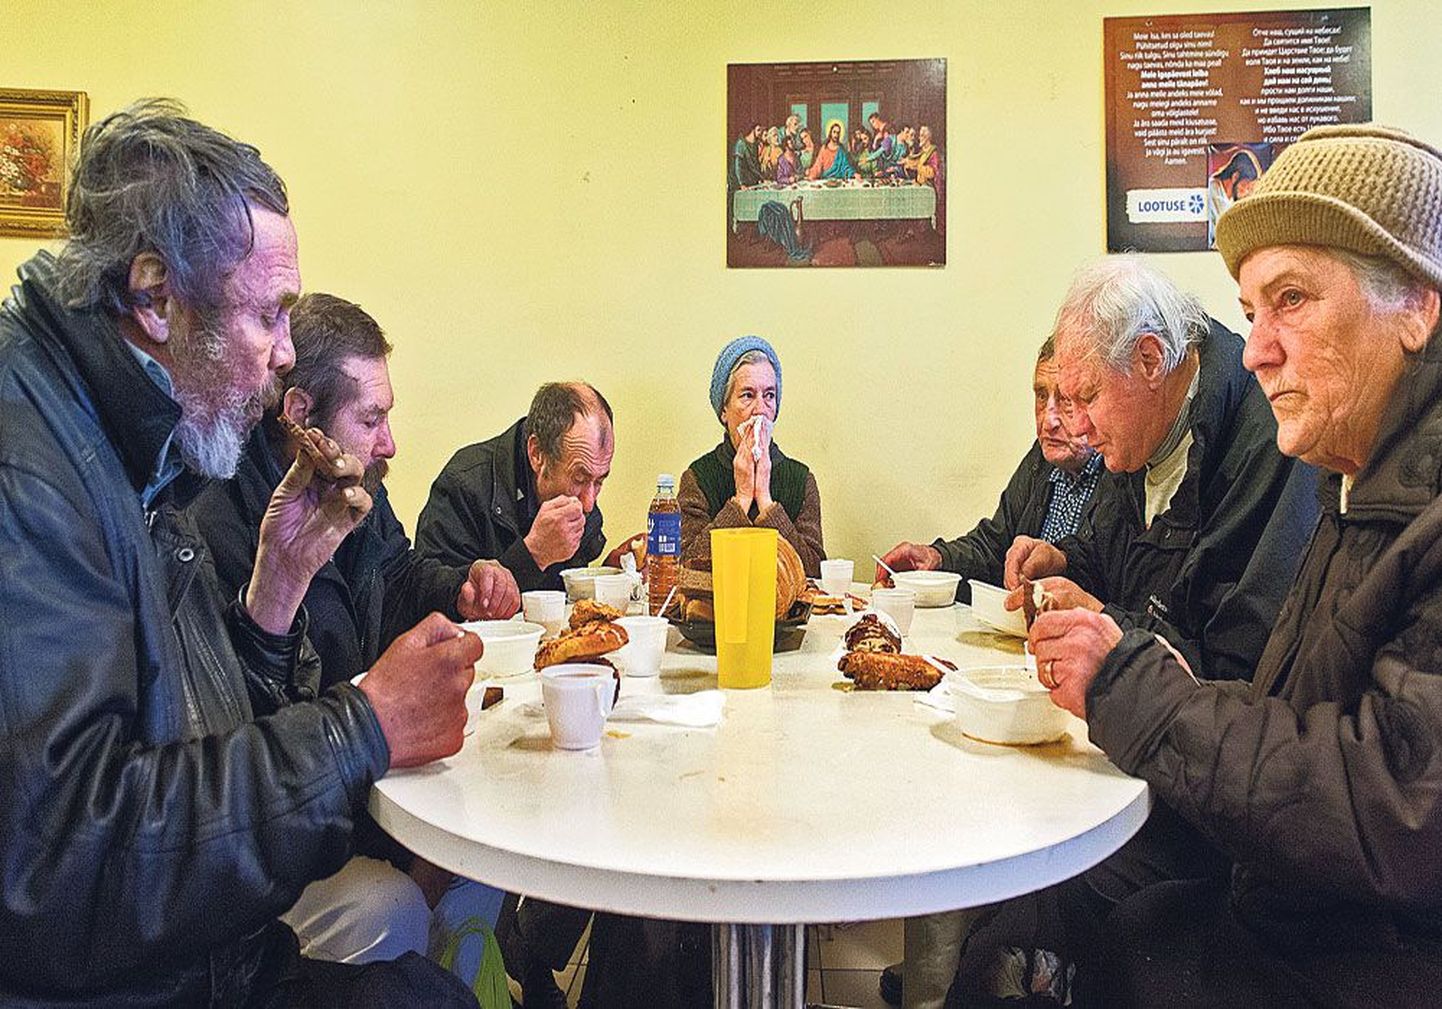 Во вторник, 29 сентября,  суповая кухня на улице Сепа в Таллинне в последний раз накормила около 200 человек. Перед тем как приступить к еде, люди произносили короткую молитву на эстонском и русском языках.